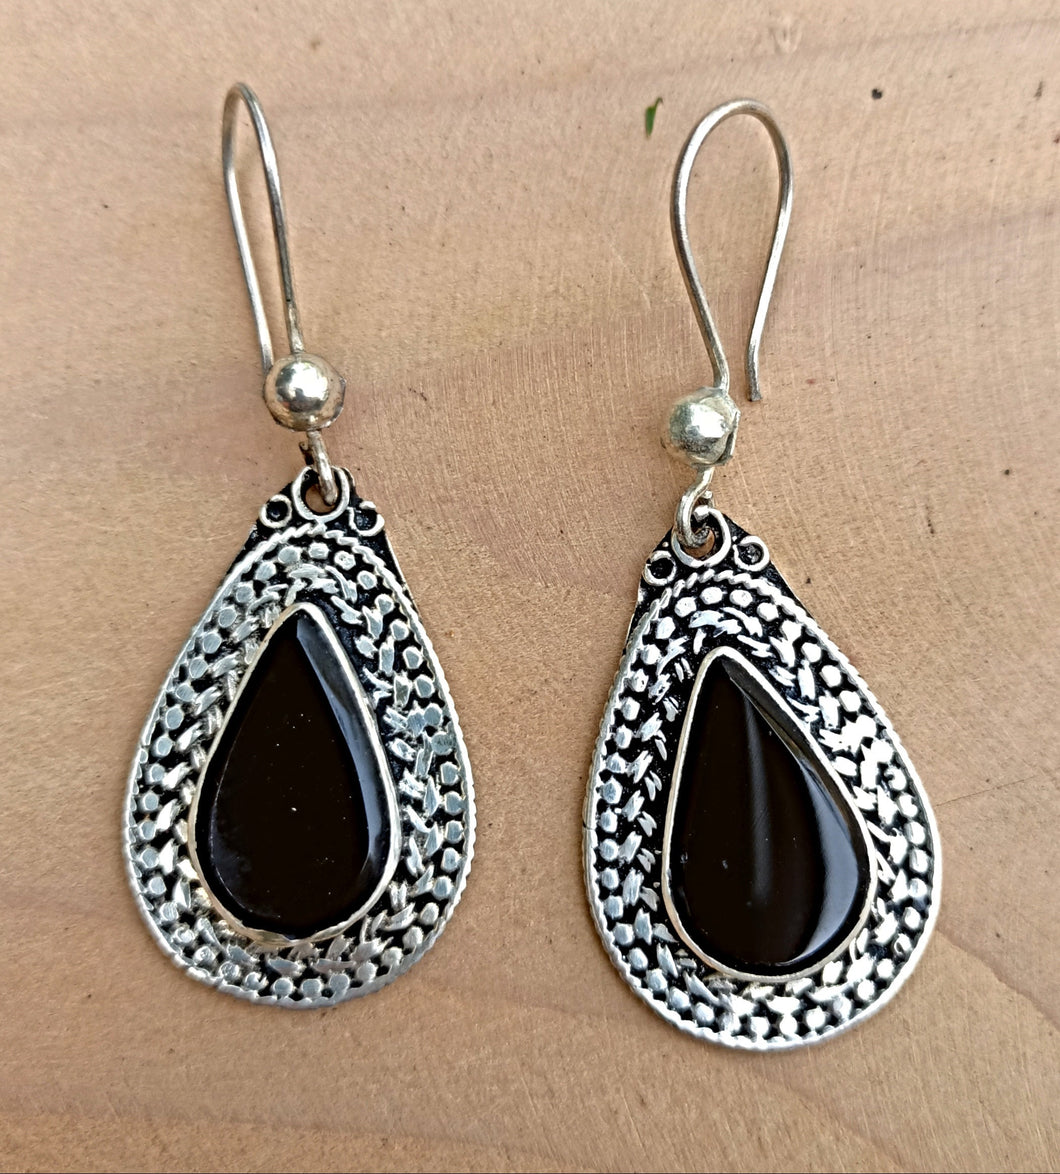 Aqeeq earring- Tribal Earrings- Afghan earrings- Kuchi earrings-silver earrings-Ethnic tribal earrings-boho-Jewelry- Dangle earrings